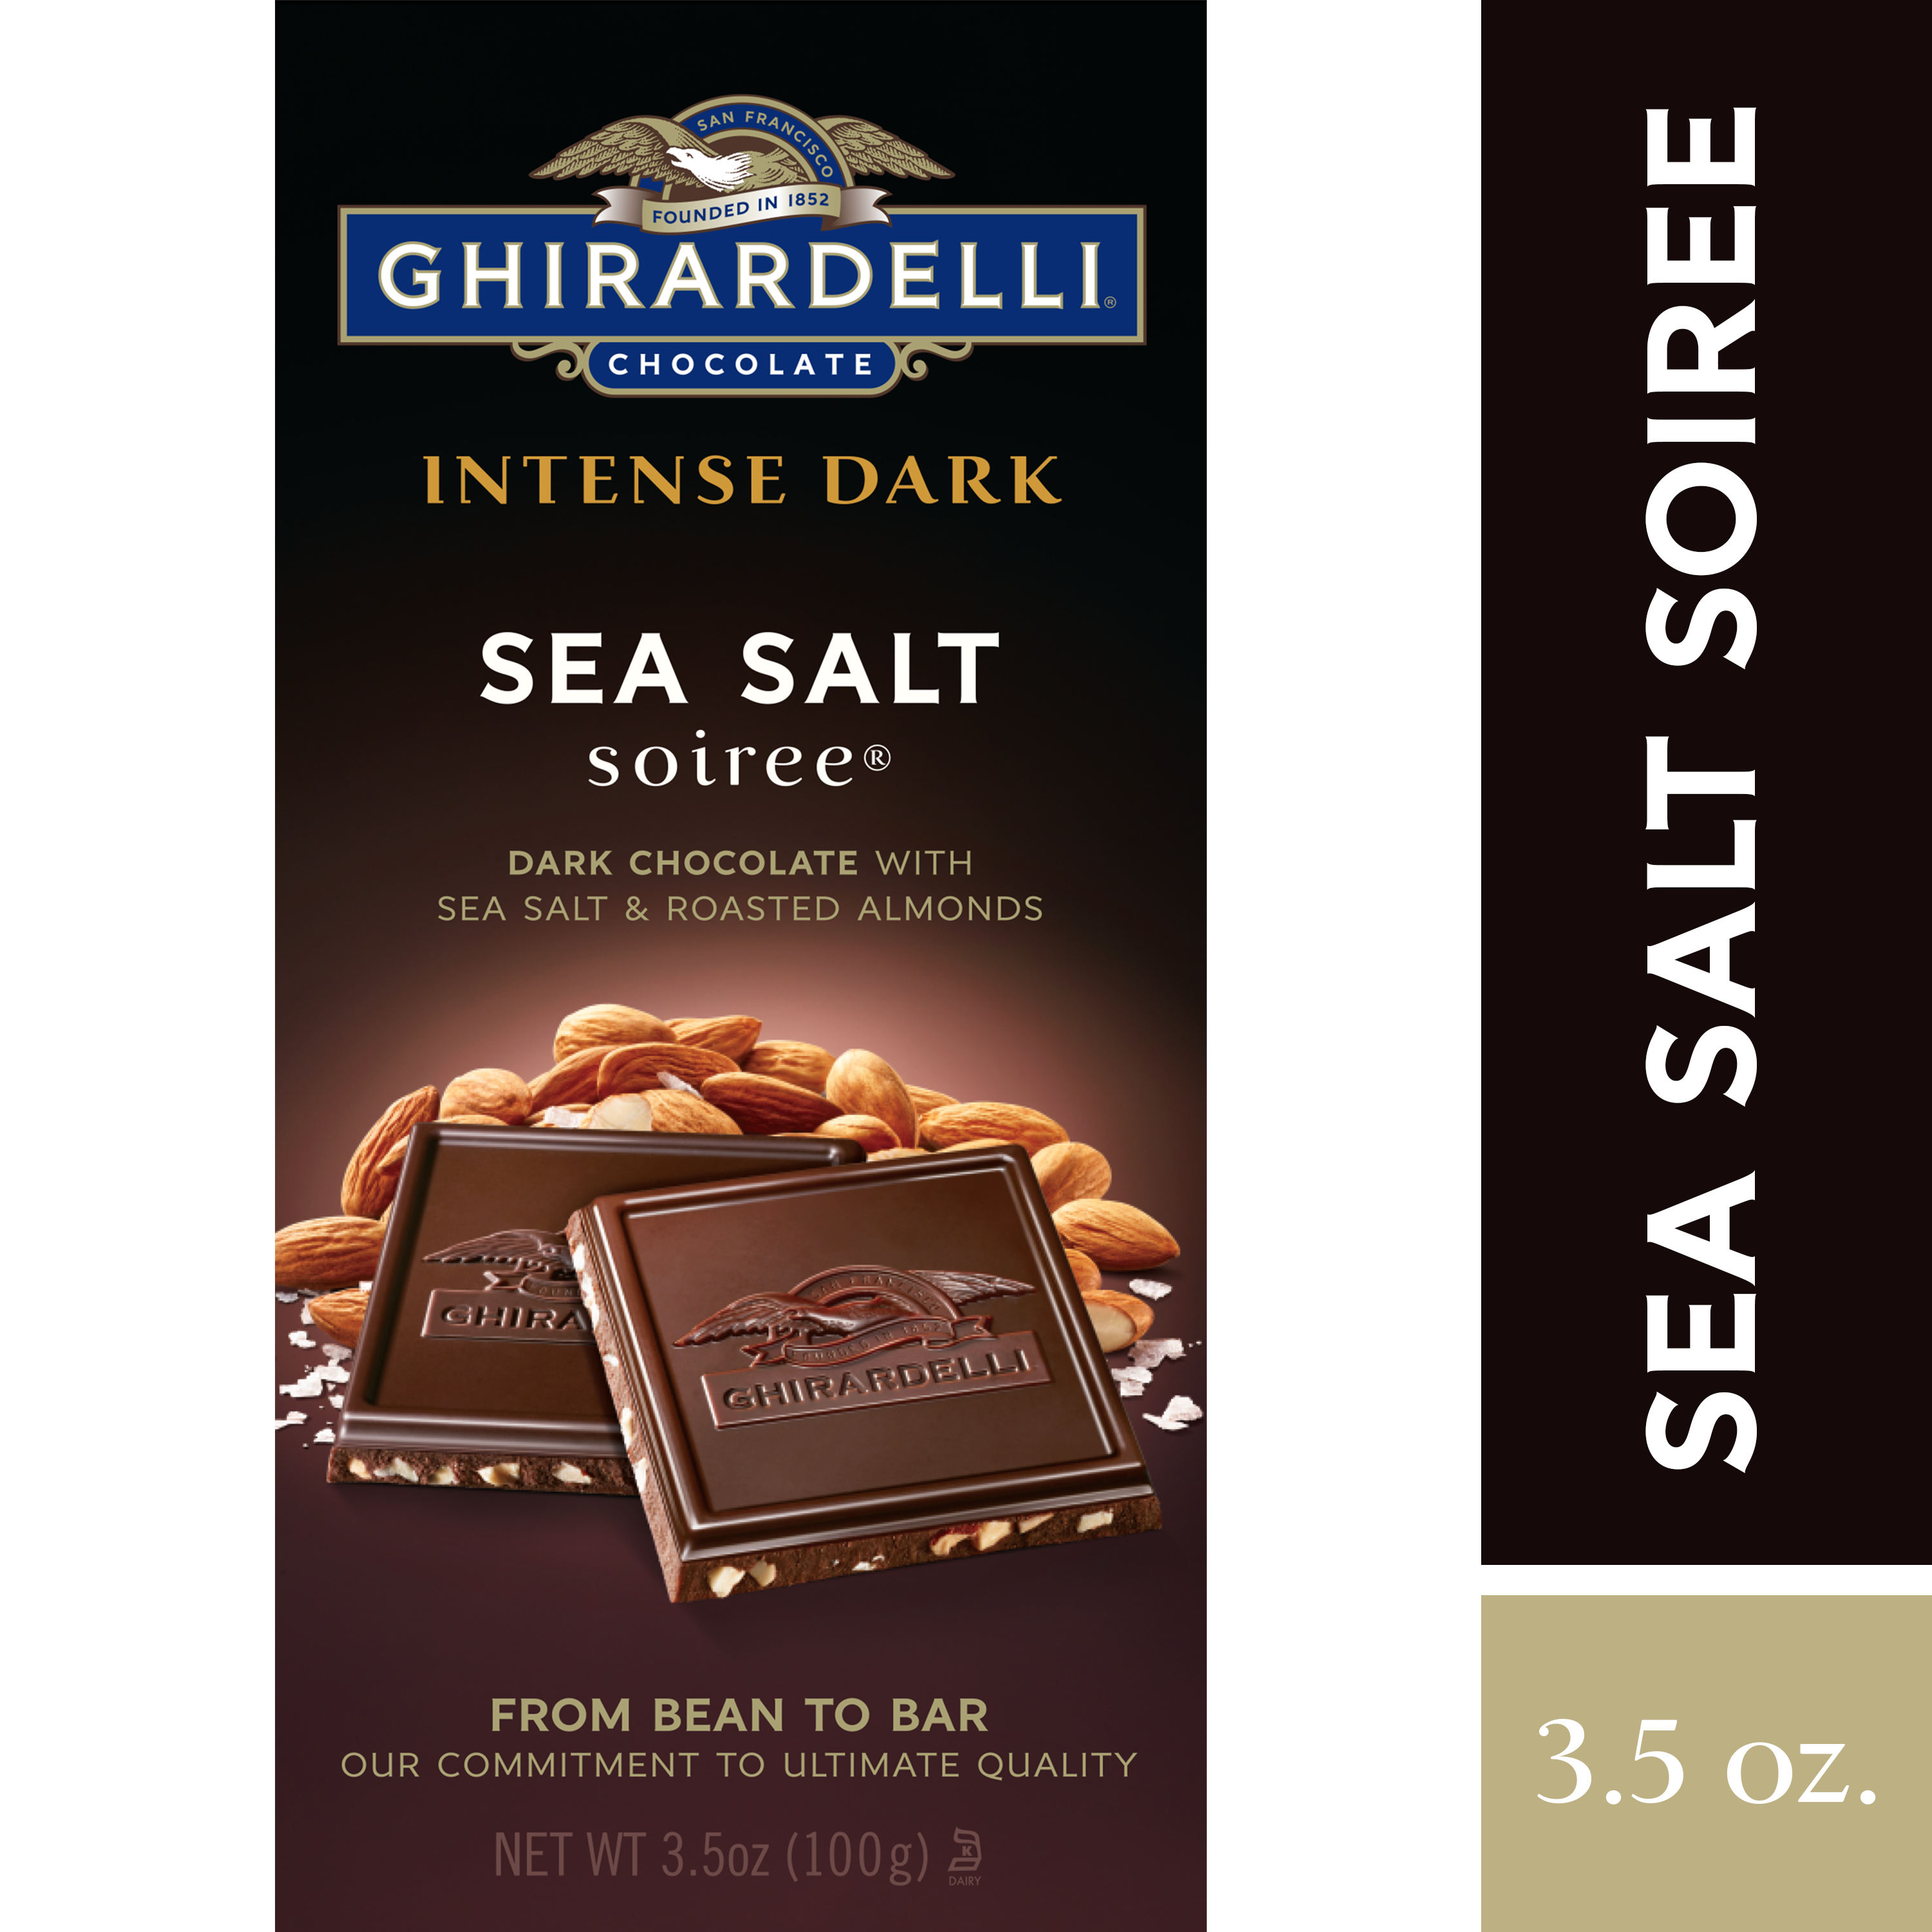 Undercover Dark Chocolate + Sea Salt Chocolate Quinoa Crisps - 3oz